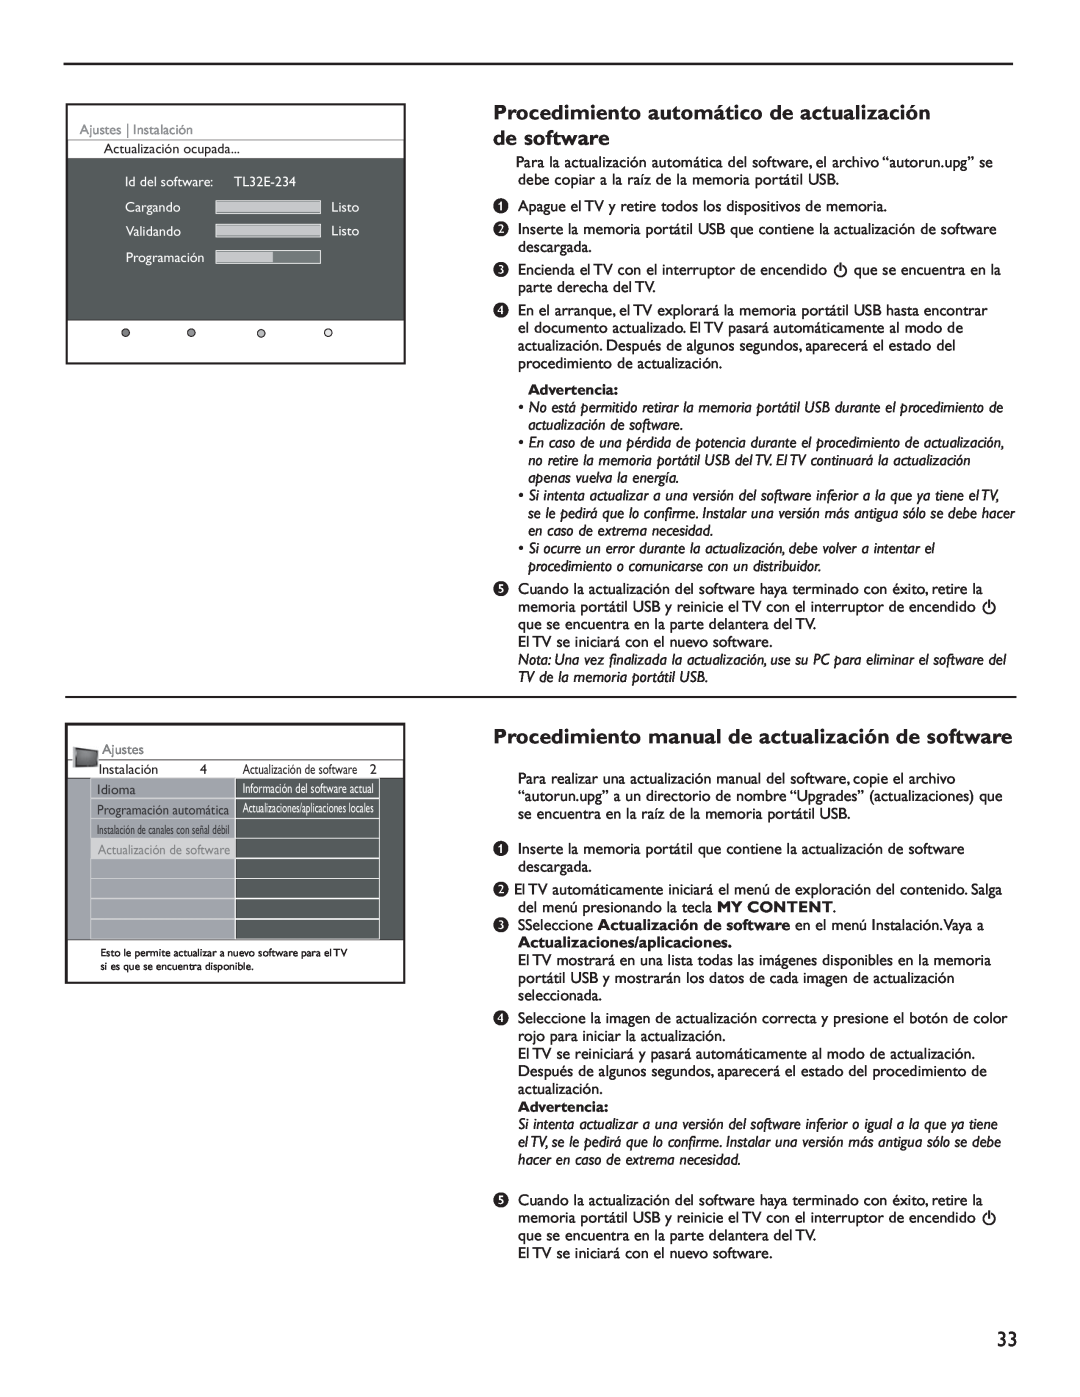 Philips 60PL9220D Procedimiento automático de actualización de software, Procedimiento manual de actualización de software 